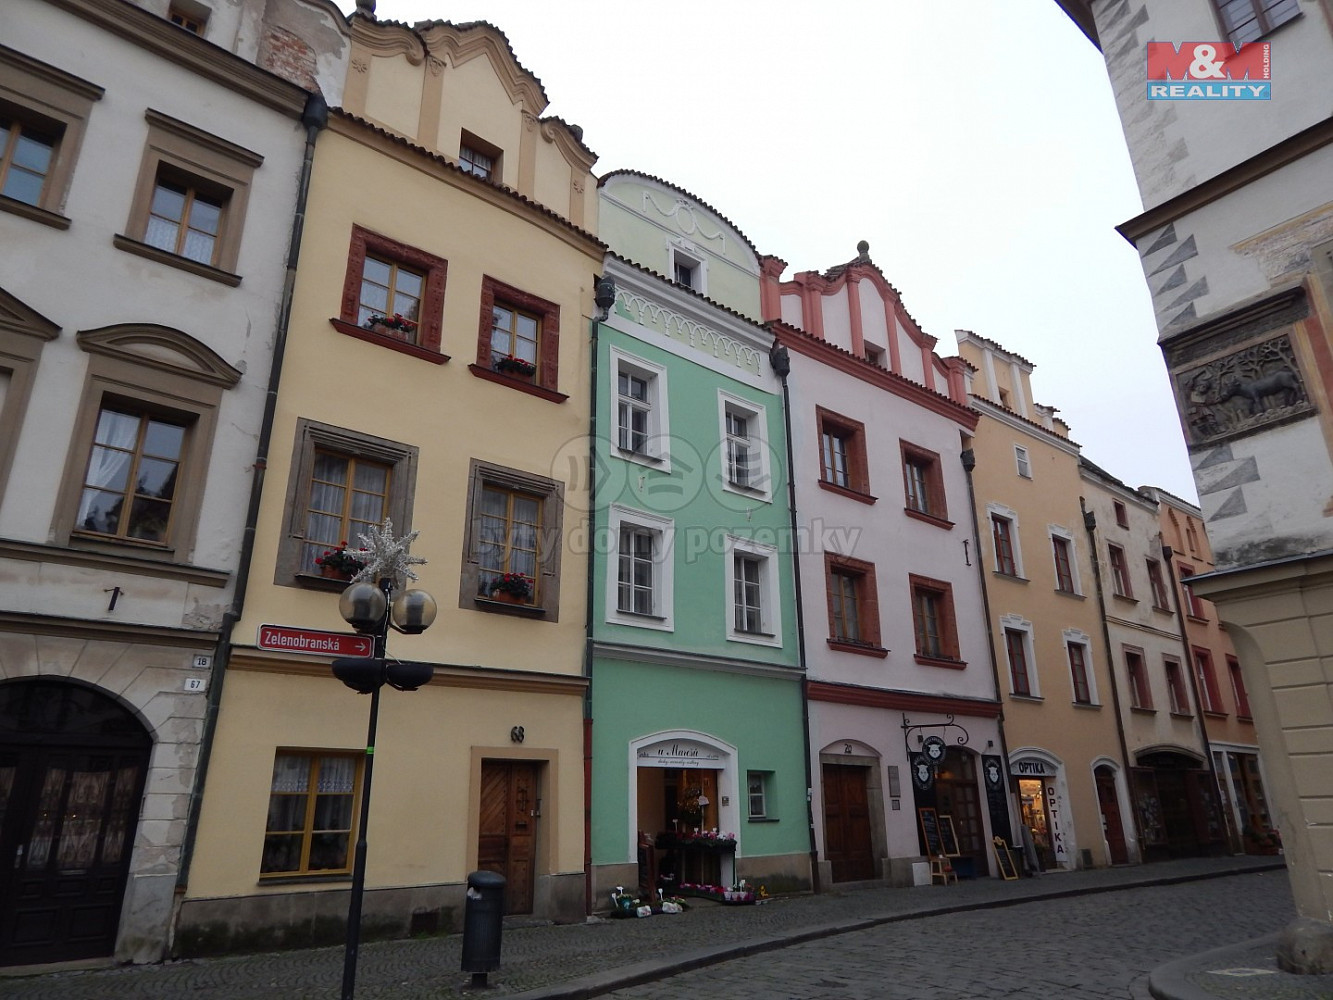 Zelenobranská, Pardubice - Pardubice-Staré Město